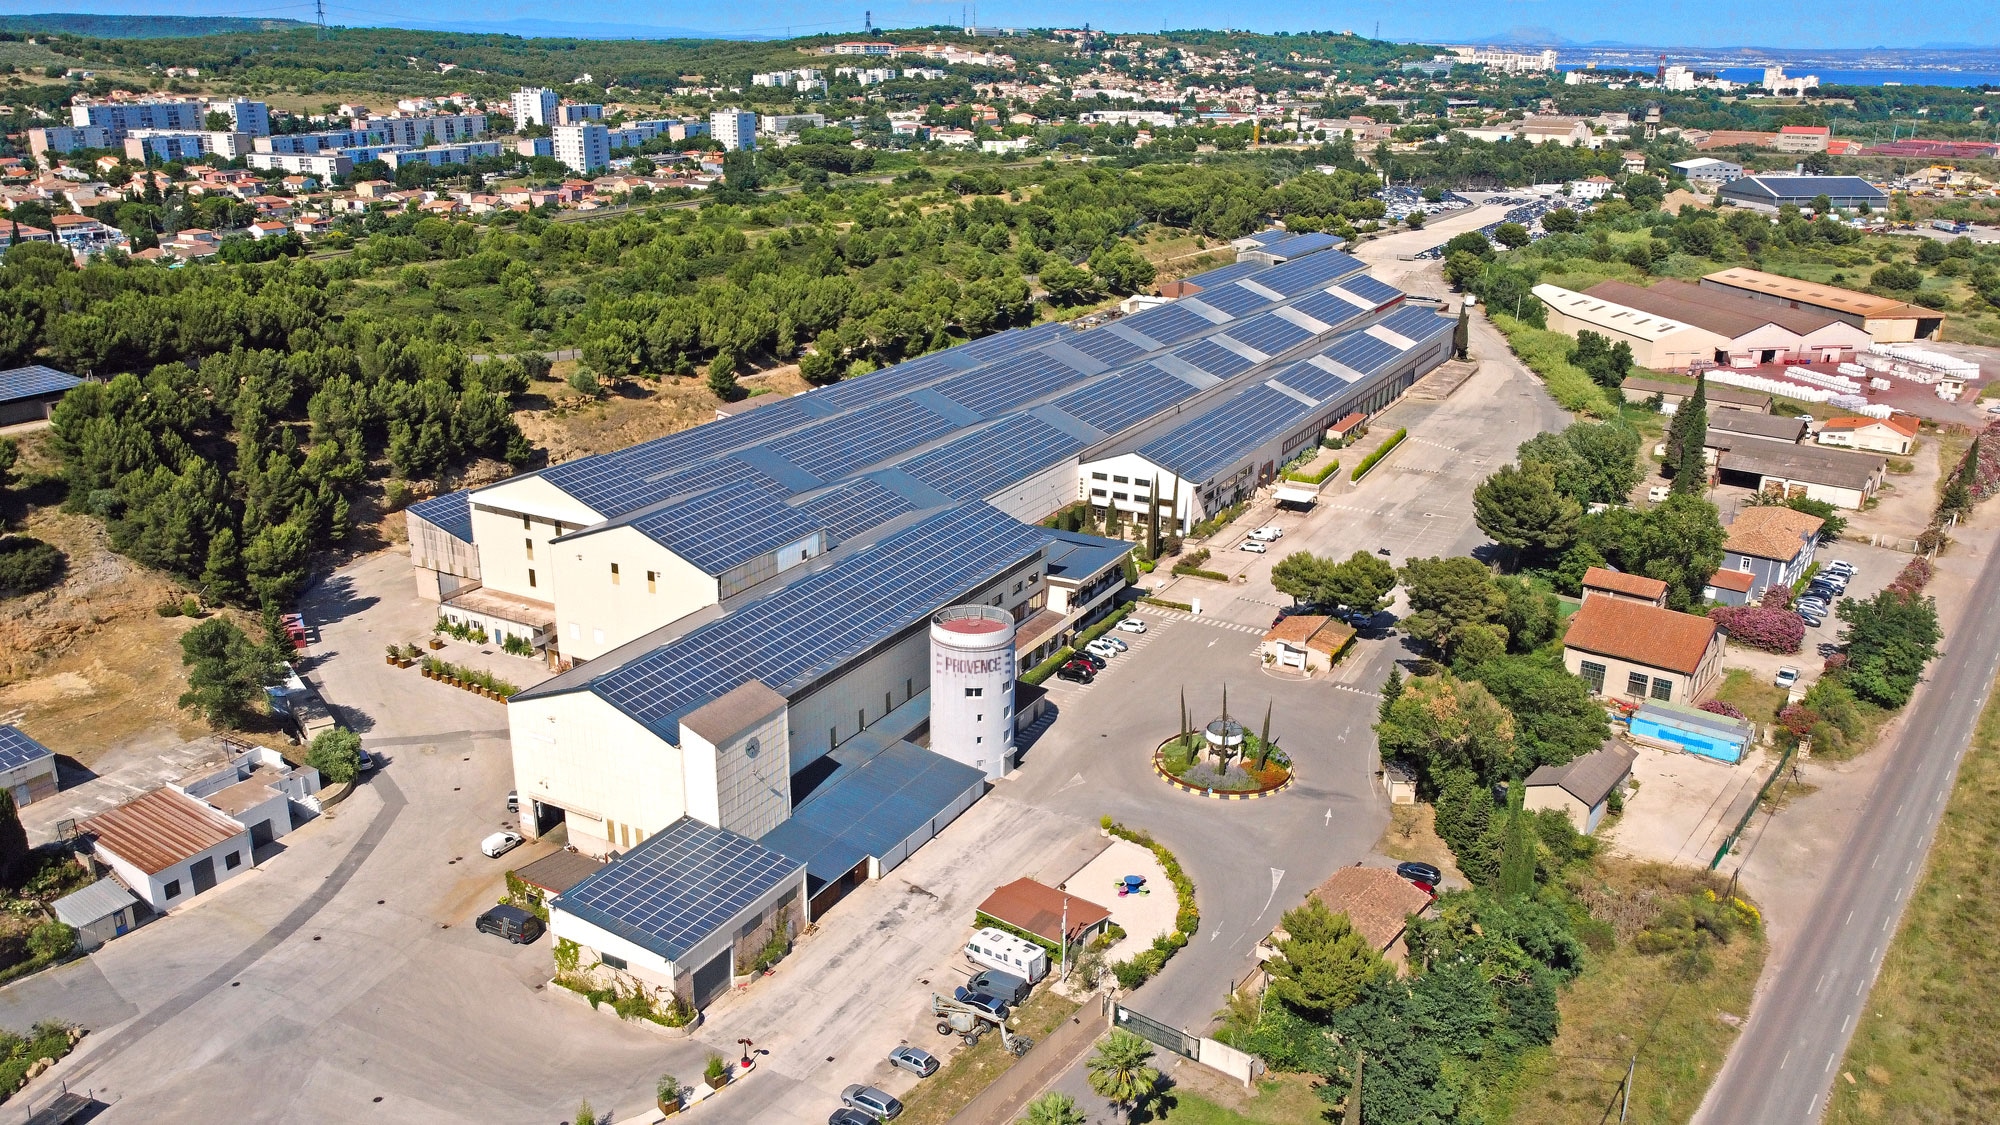 Provence Studios, Comment Provence Studios veut (re)faire du Sud une terre de cinéma, Made in Marseille